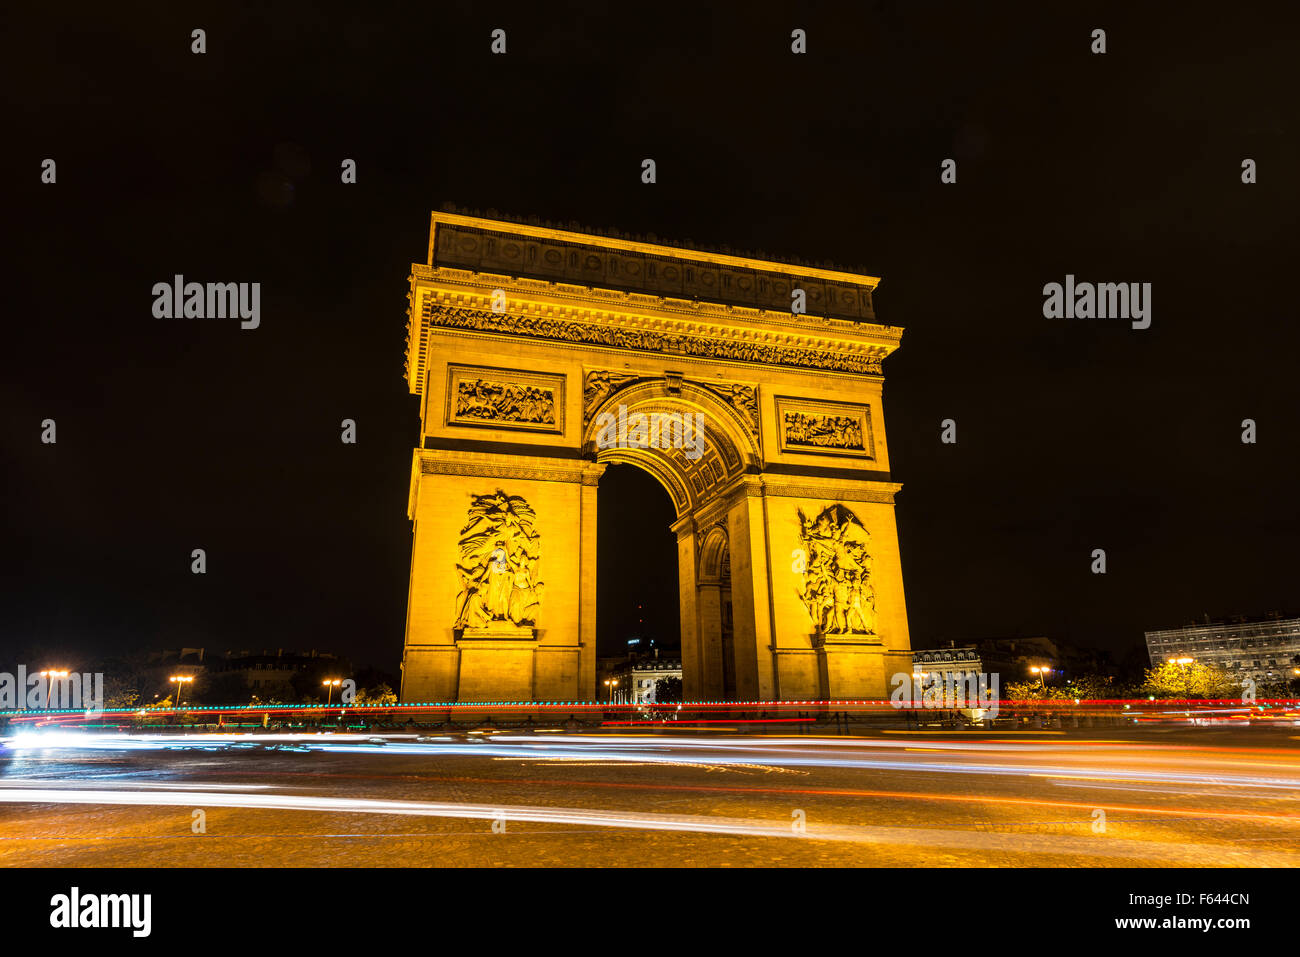 Triumphal Arch, Arc de Triomphe at night, trails of light, Place Charles de Gaulle, Paris, Ile-de-France, France Stock Photo